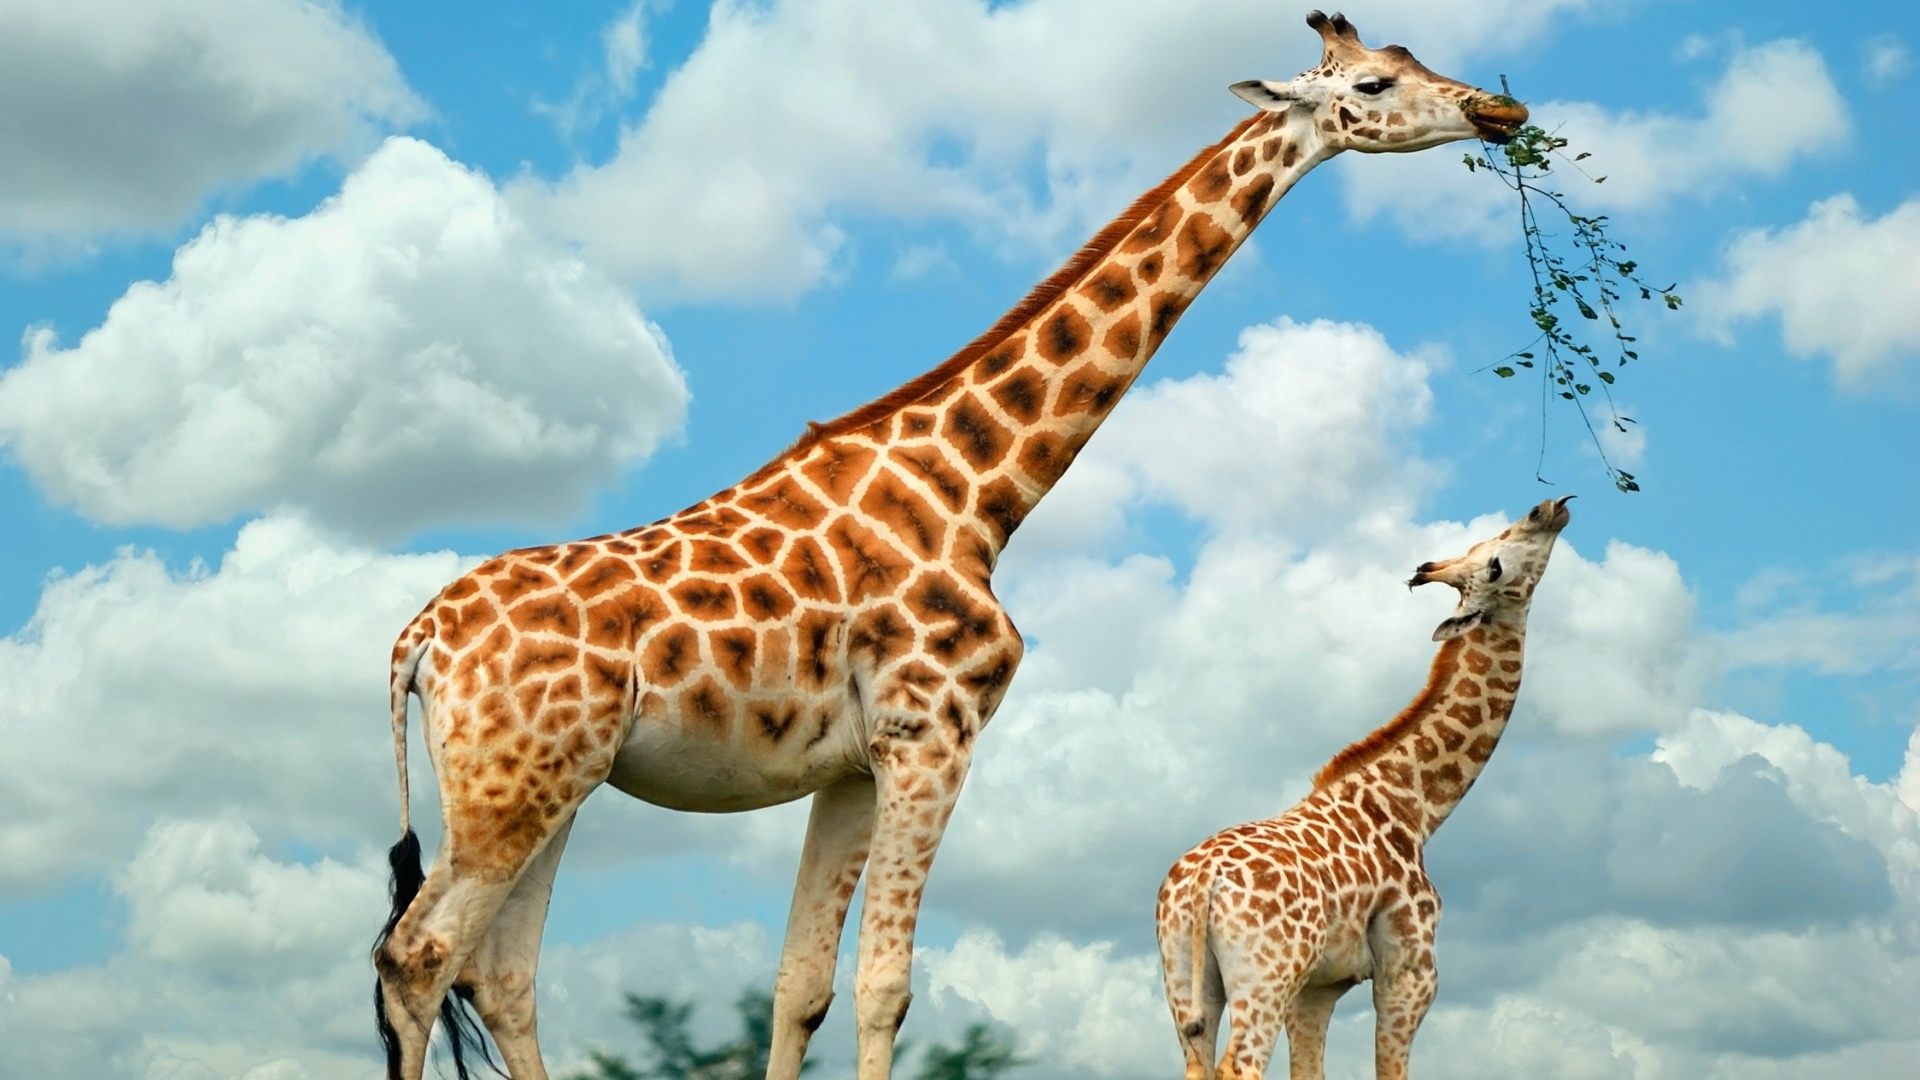 Happy Giraffe Family for 1920 x 1080 HDTV 1080p resolution